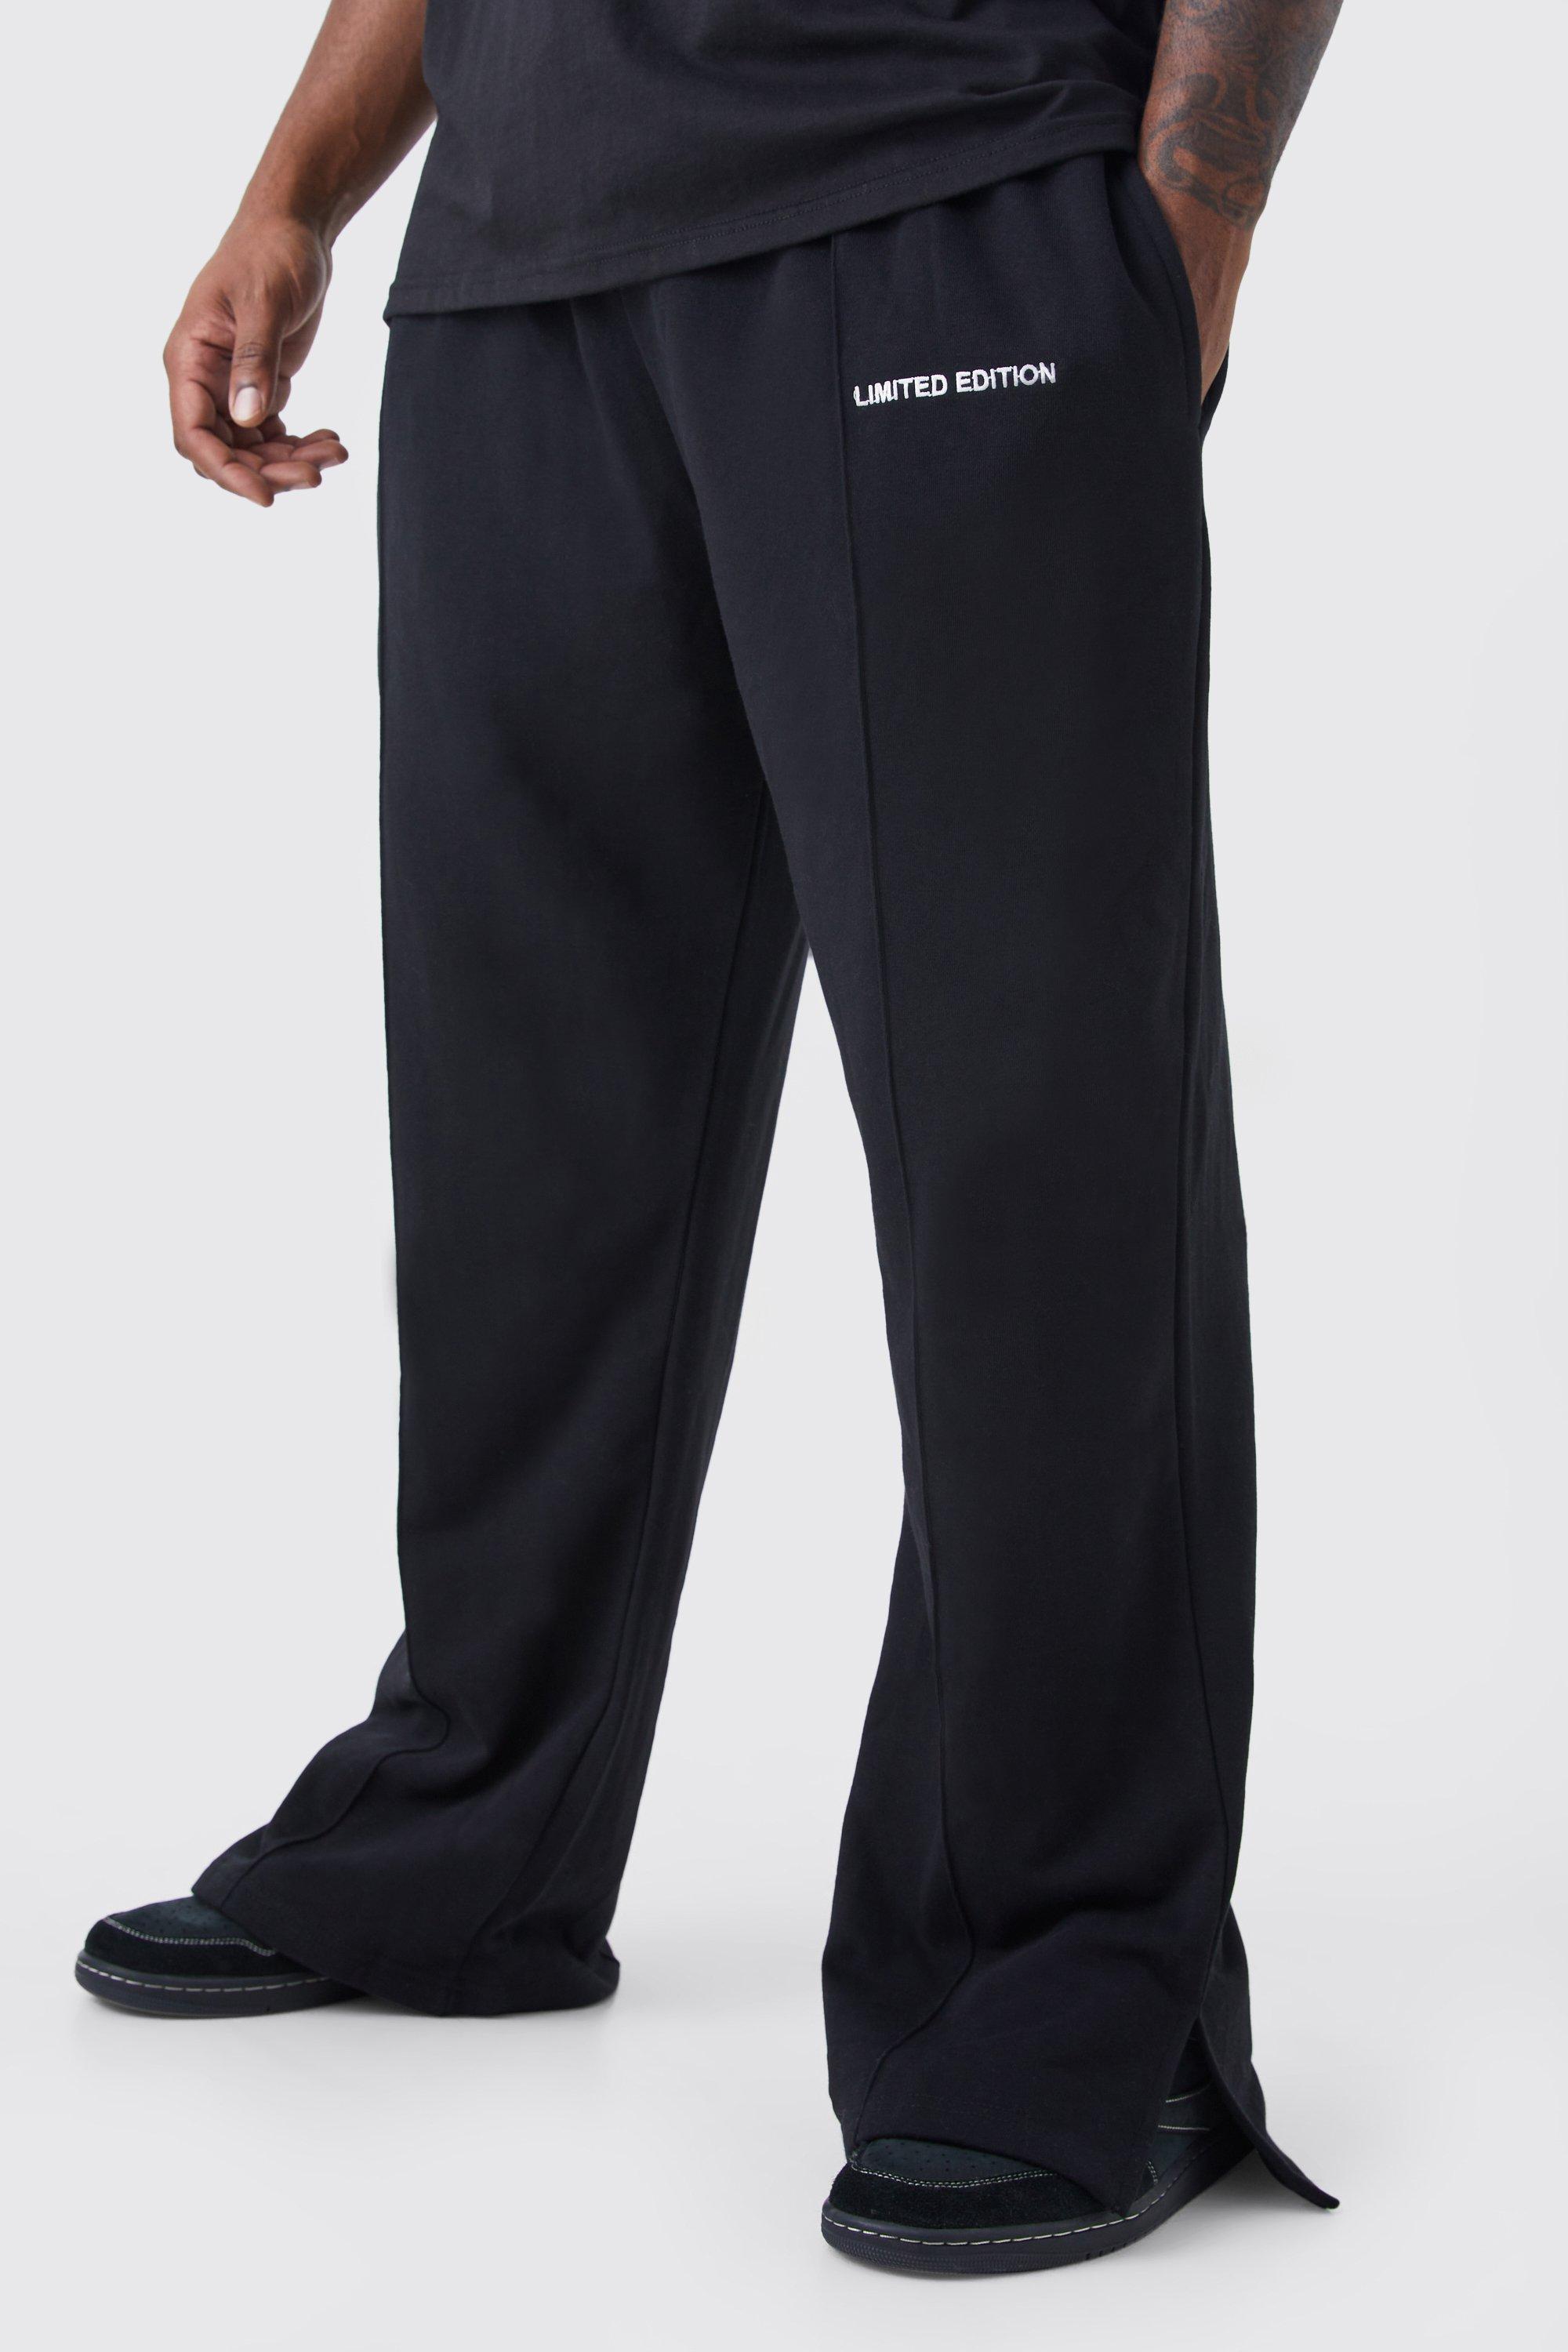 Image of Pantaloni tuta pesanti Plus Size rilassati con spacco sul fondo, Nero